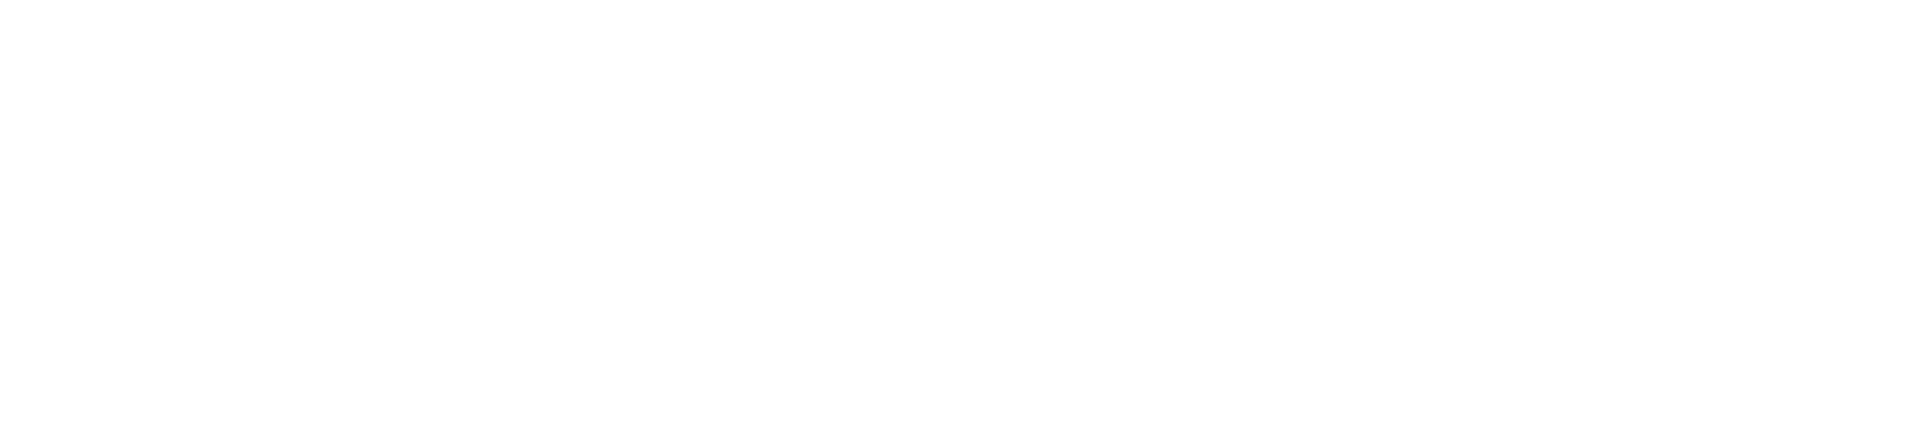 Tracktio Logo